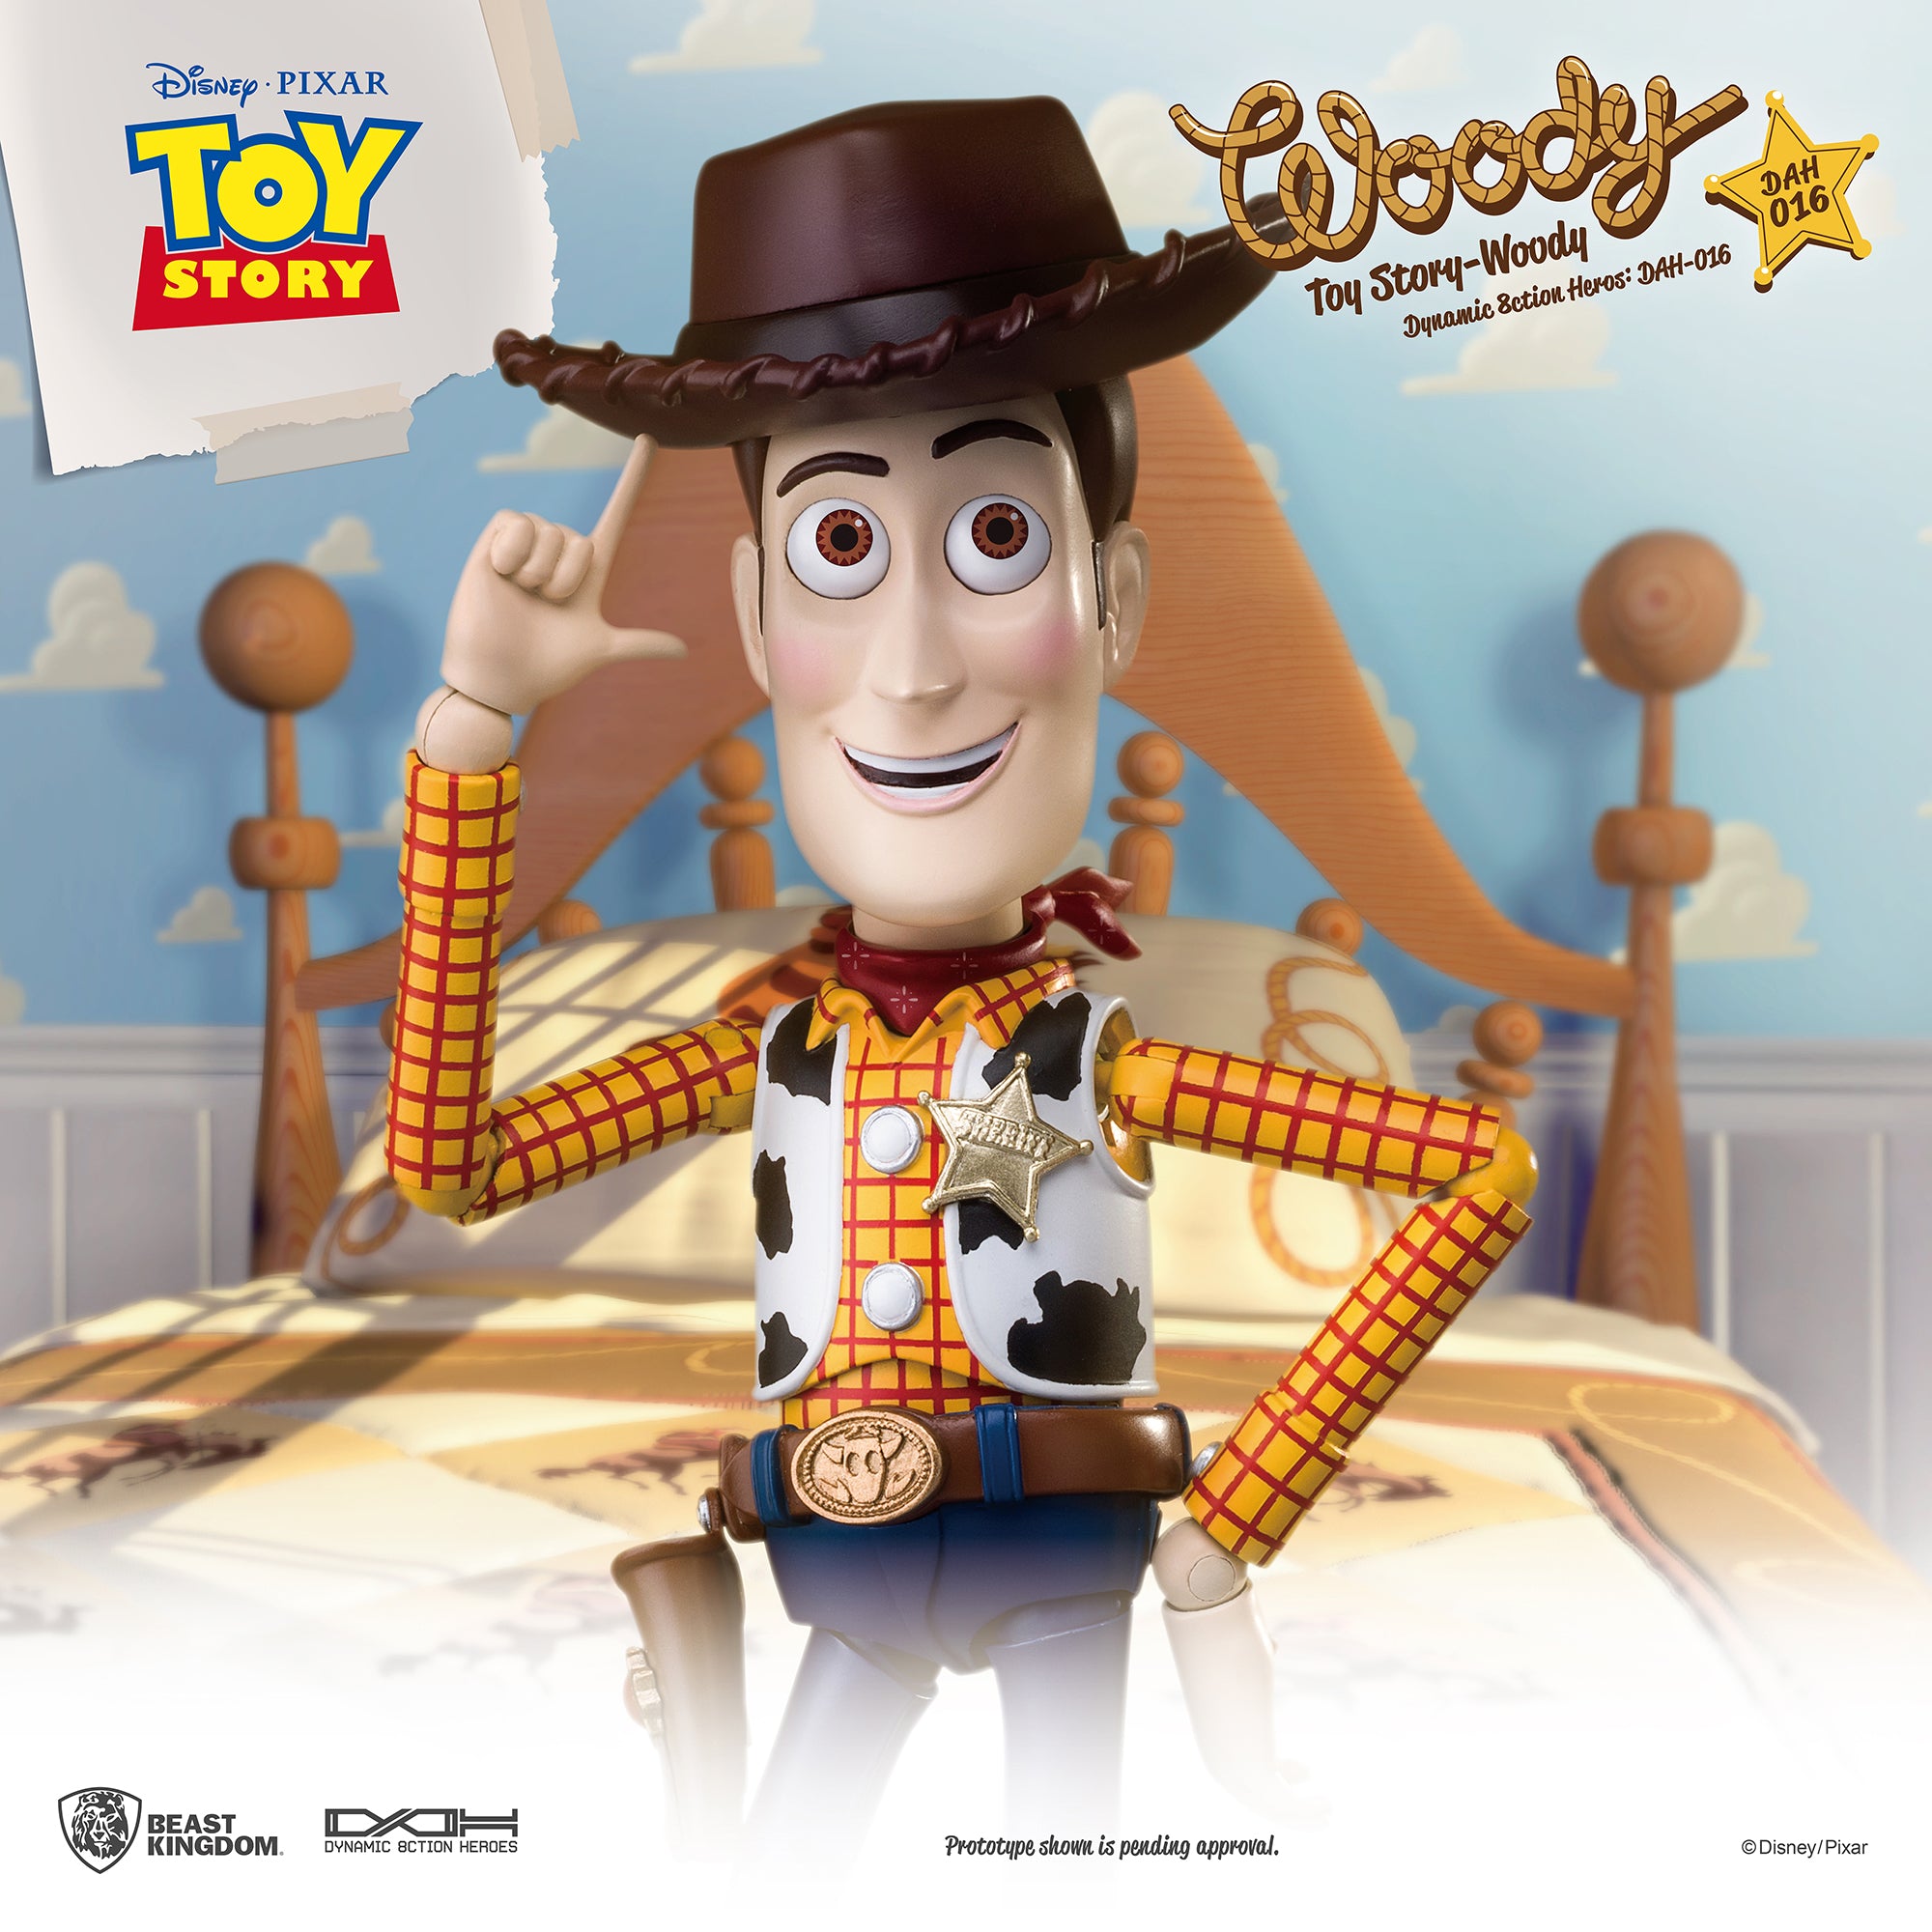 Beast Kingdom DAH-016 Disney PIXAR Toy Story Woody(RE) 1:9 Scale